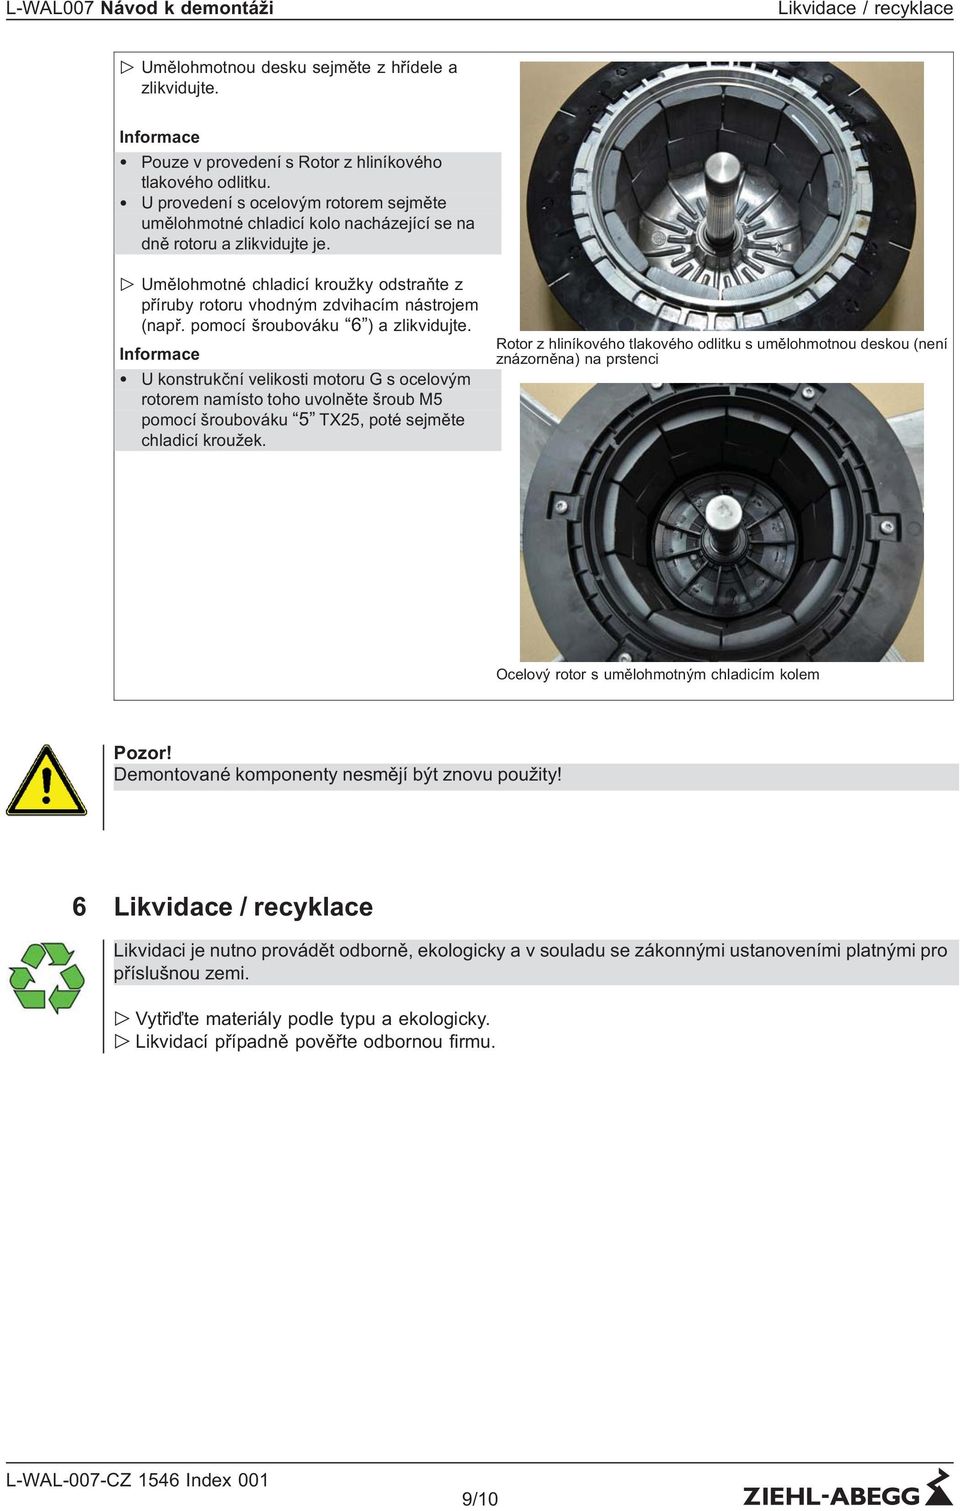 " Umělohmotné chladicí kroužky odstraňte z příruby rotoru vhodným zdvihacím nástrojem (např. pomocí šroubováku 6 ) a zlikvidujte.